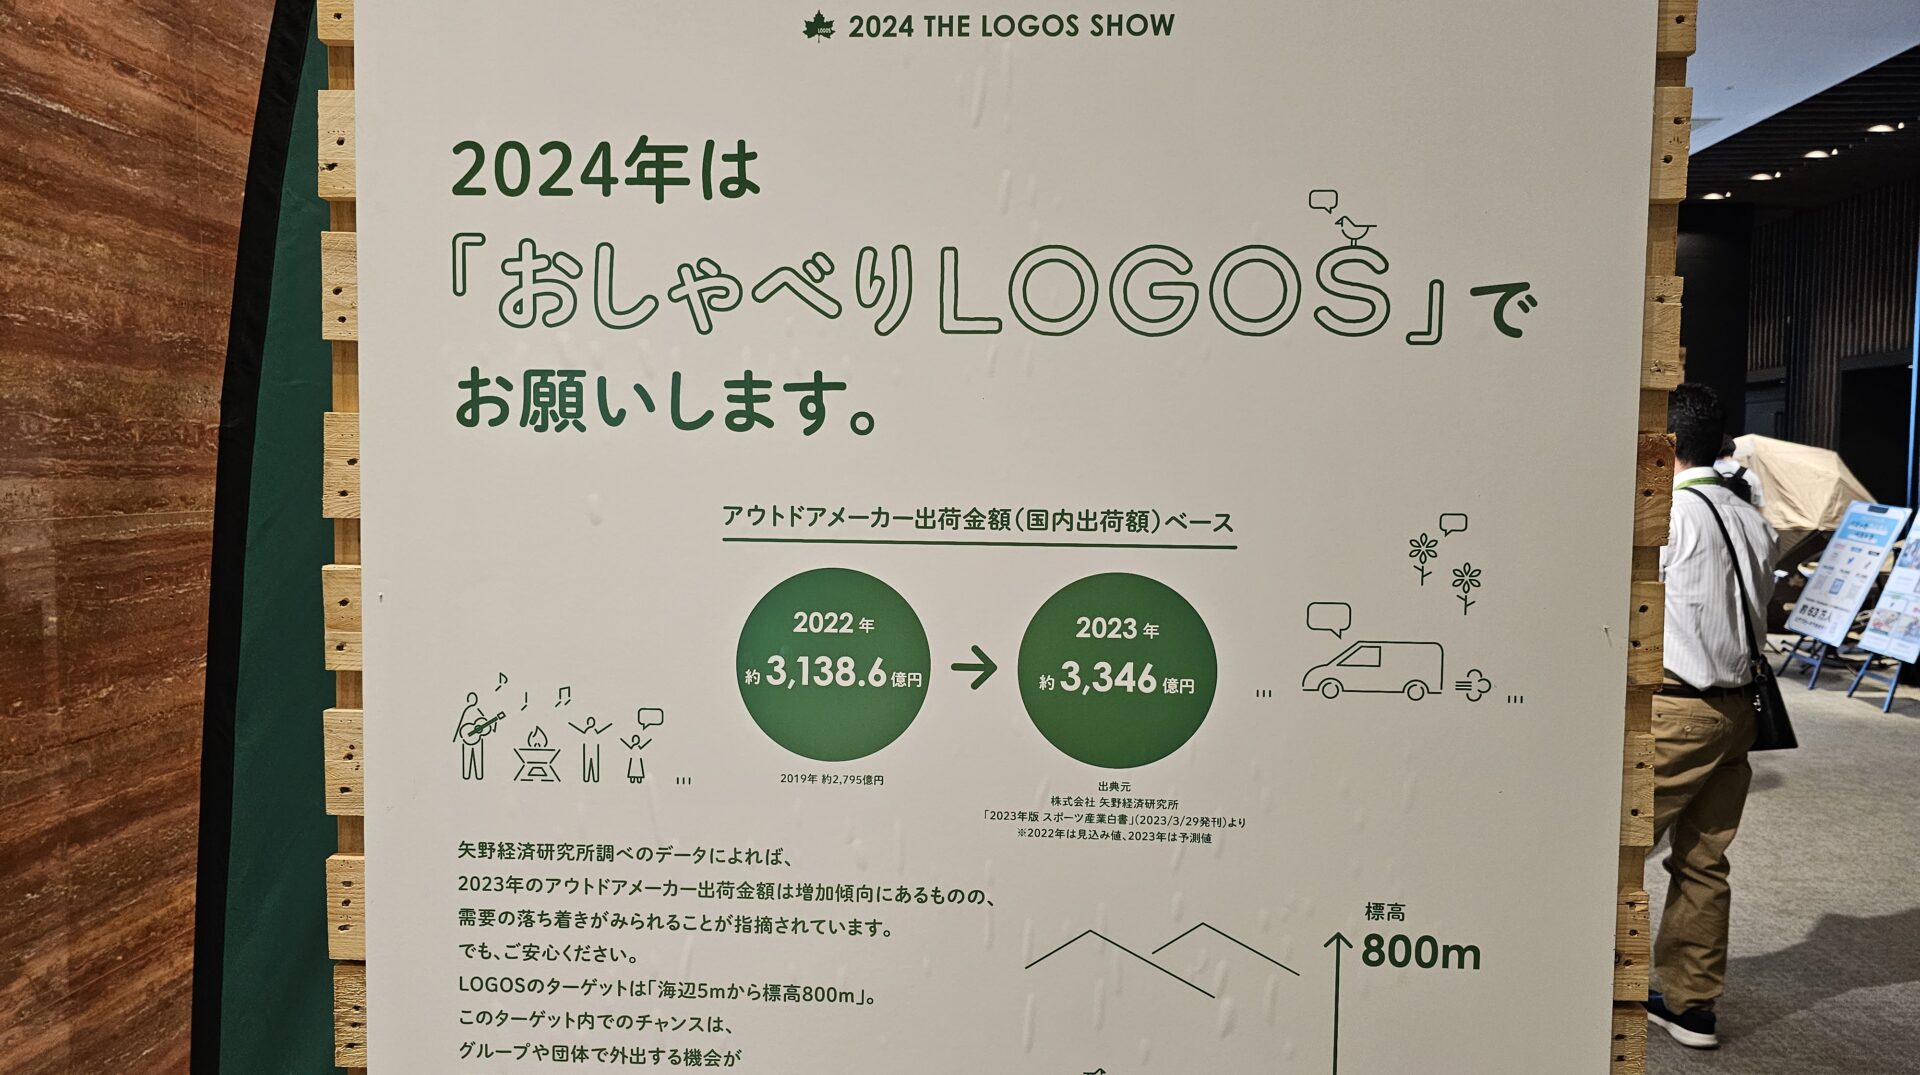 2024 THE LOGOS SHOW